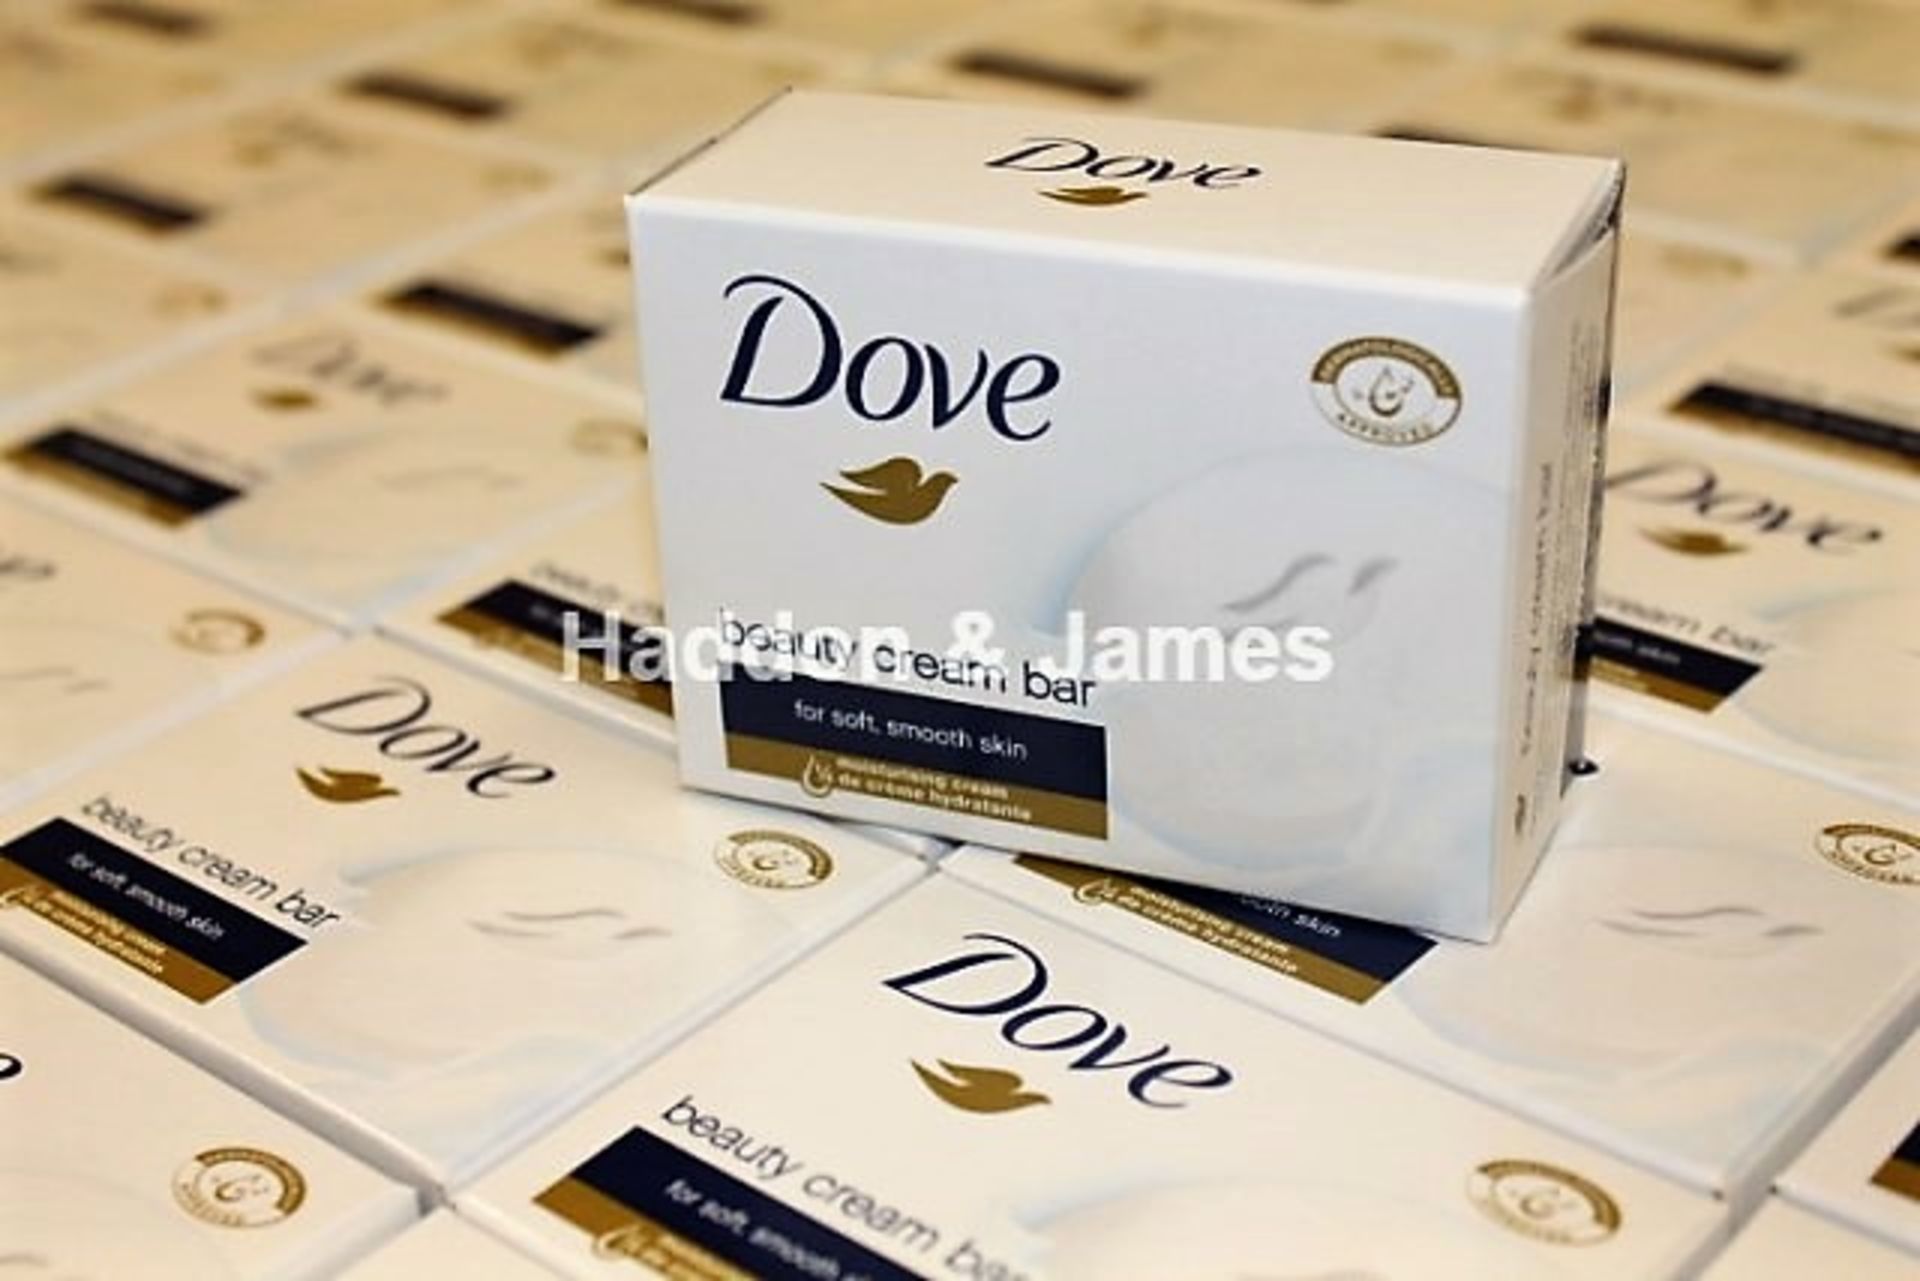 V Brand New 12 x Dove Soap Regular 4 Pack (12 of 4 pack = 48 bars) x 100gm Superdrug Price £31.80